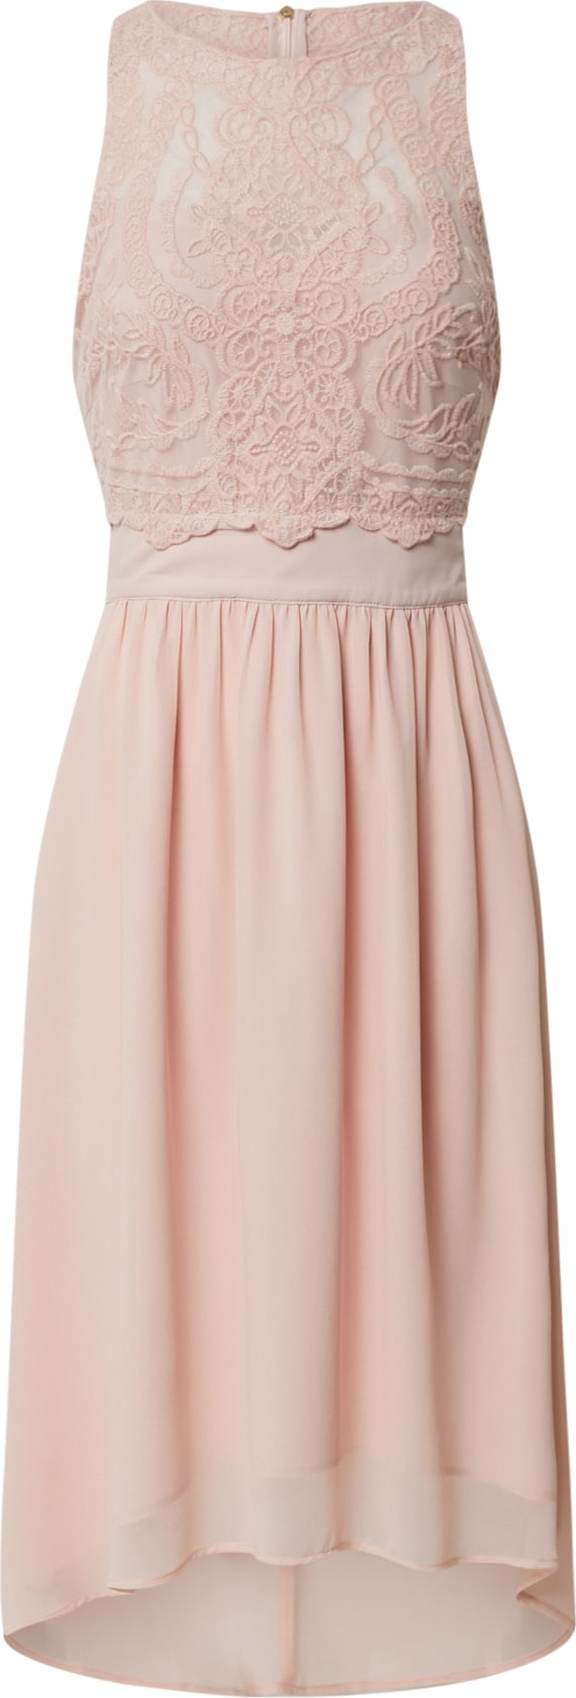 Esprit Collection Koktejlové šaty světle růžová